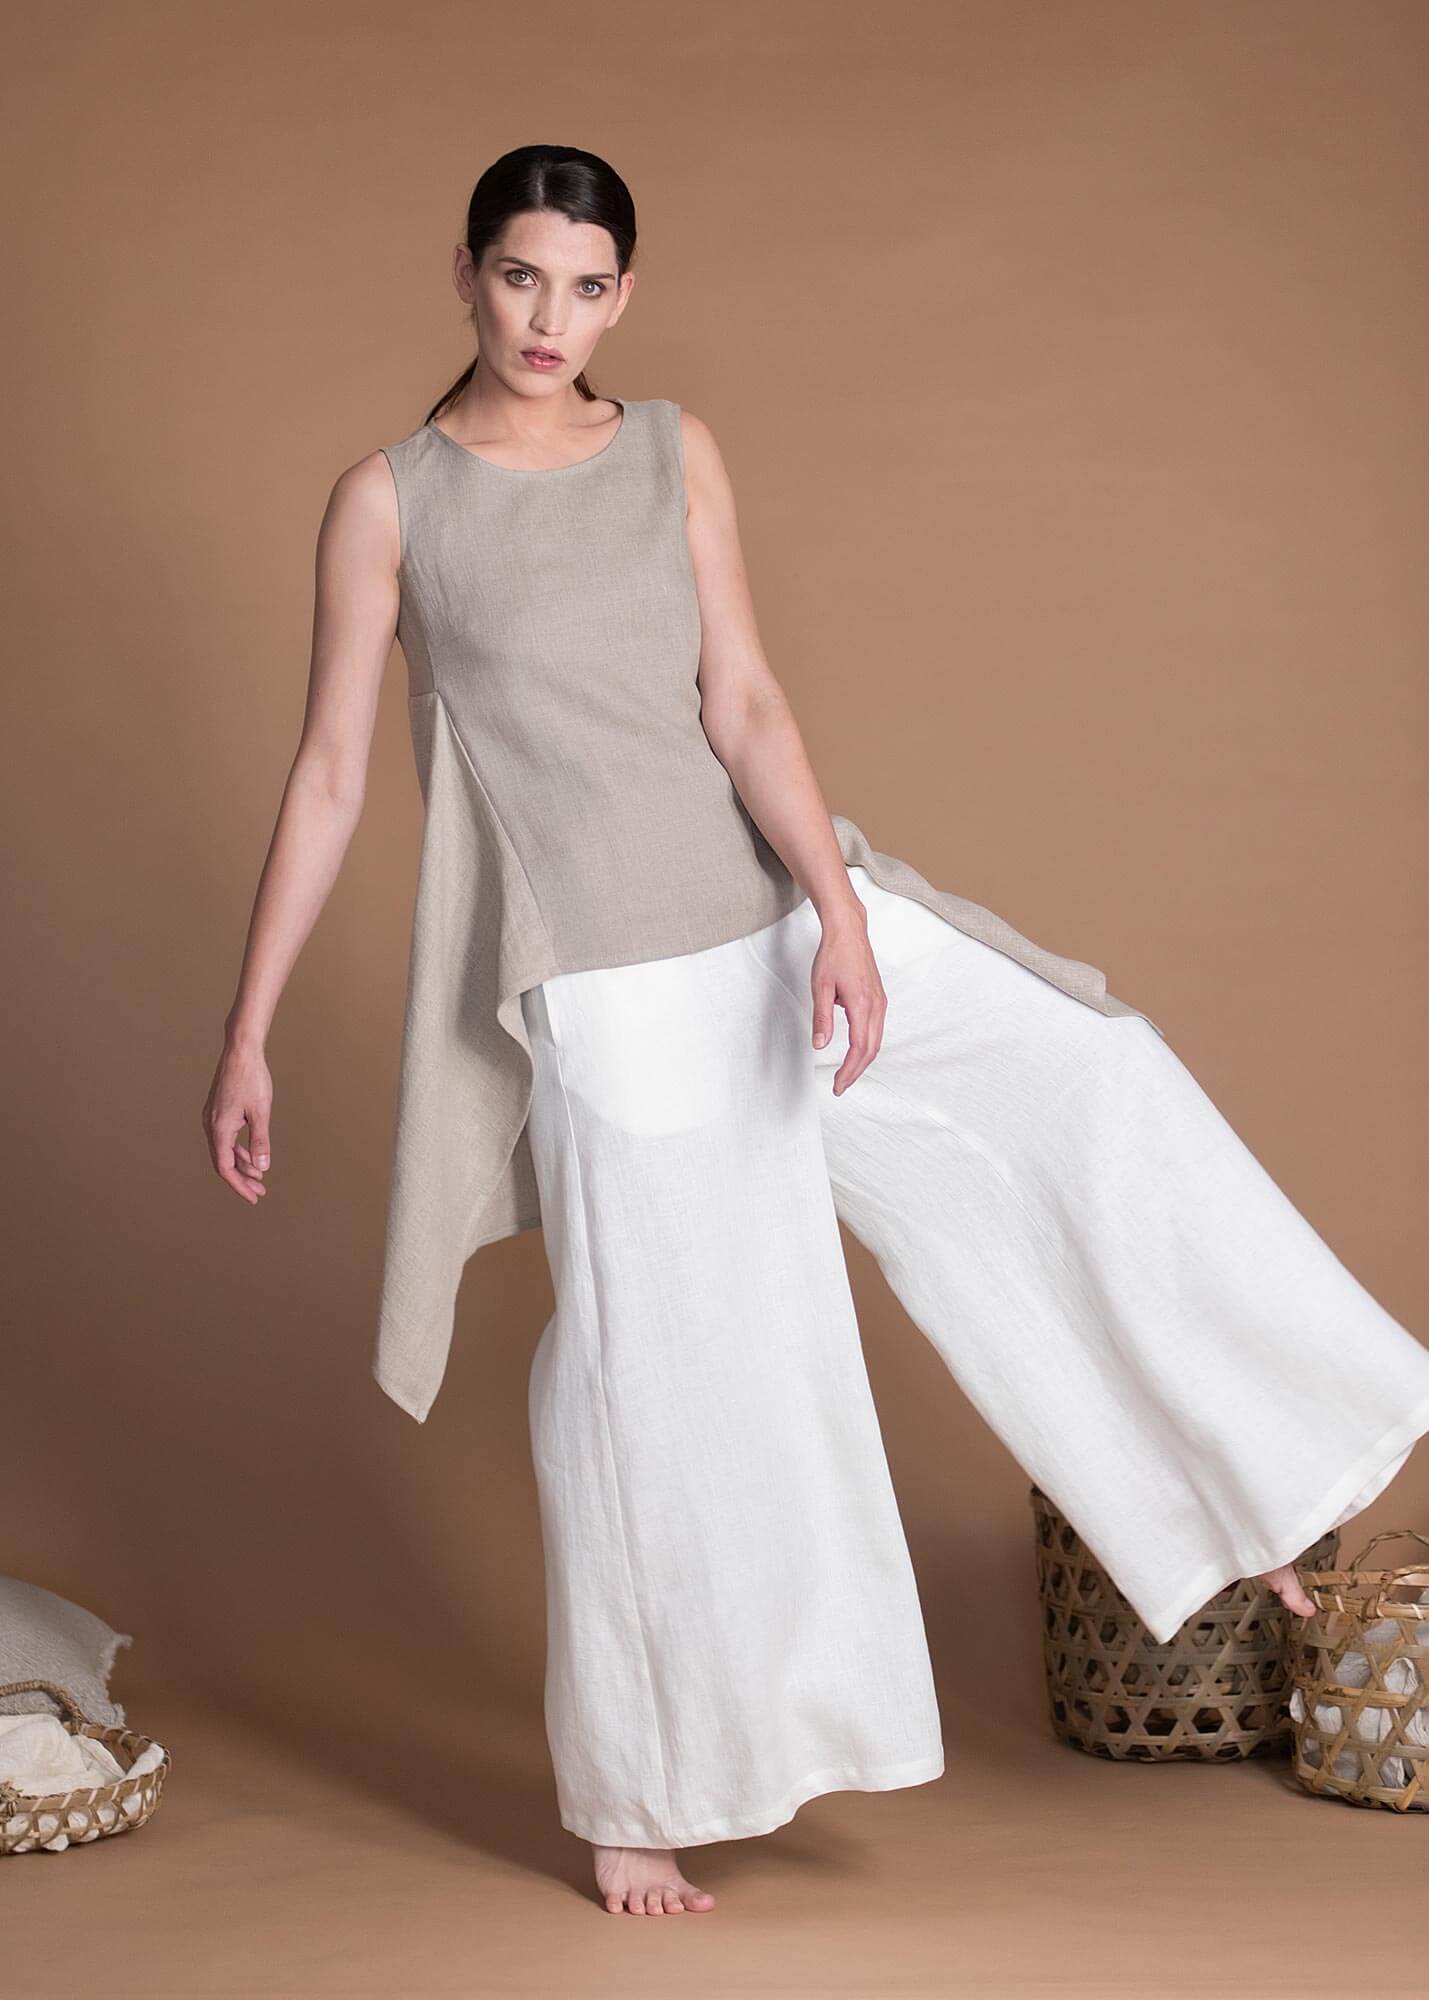 Мягкие женские белые льняные брюки-палаццо с широким эластичным поясом